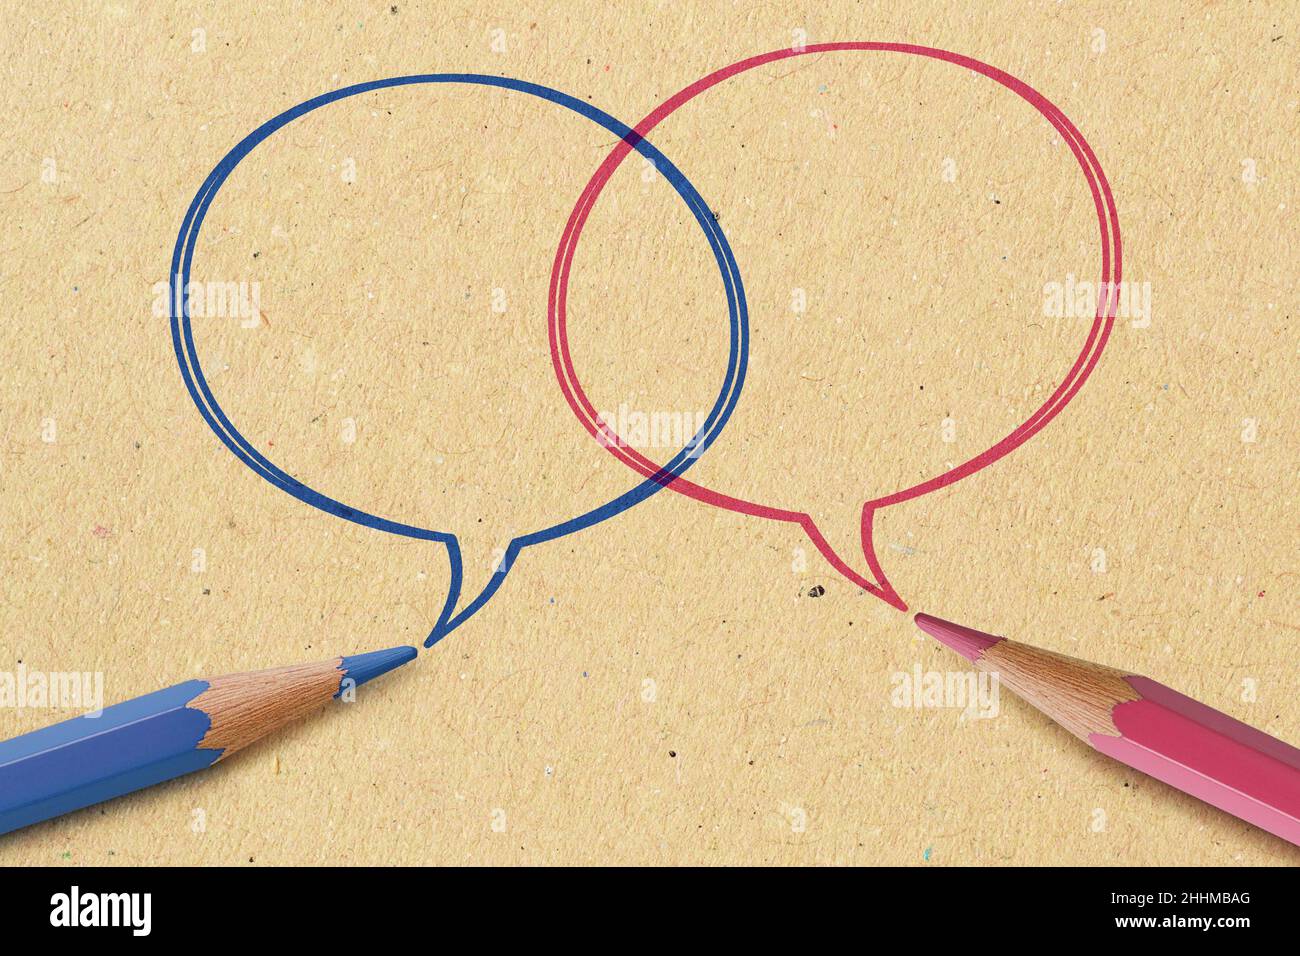 Lápiz azul y rosa con burbujas de voz sobre fondo de papel reciclado - concepto de comunicación entre hombres y mujeres (comunicación de género) Foto de stock